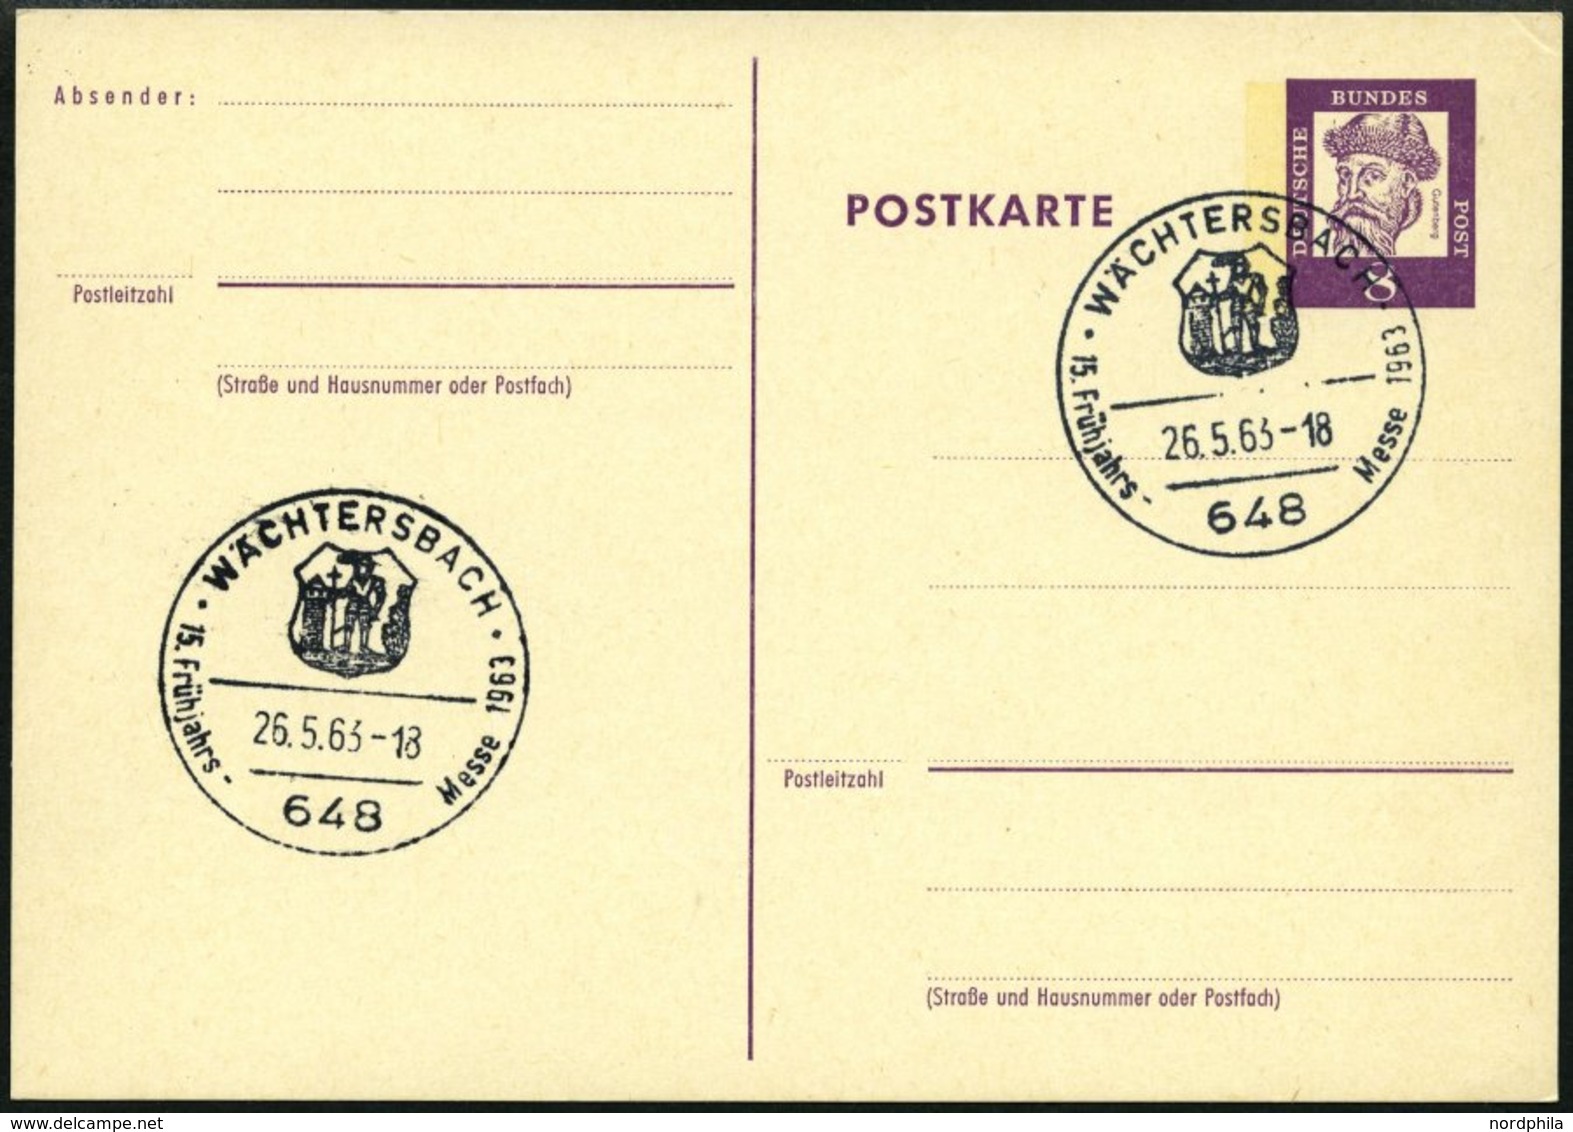 GANZSACHEN P 73 BRIEF, 1962, 8 Pf. Gutenberg, Postkarte In Grotesk-Schrift, Leer Gestempelt Mit Sonderstempel WÄCHTERSBA - Sammlungen